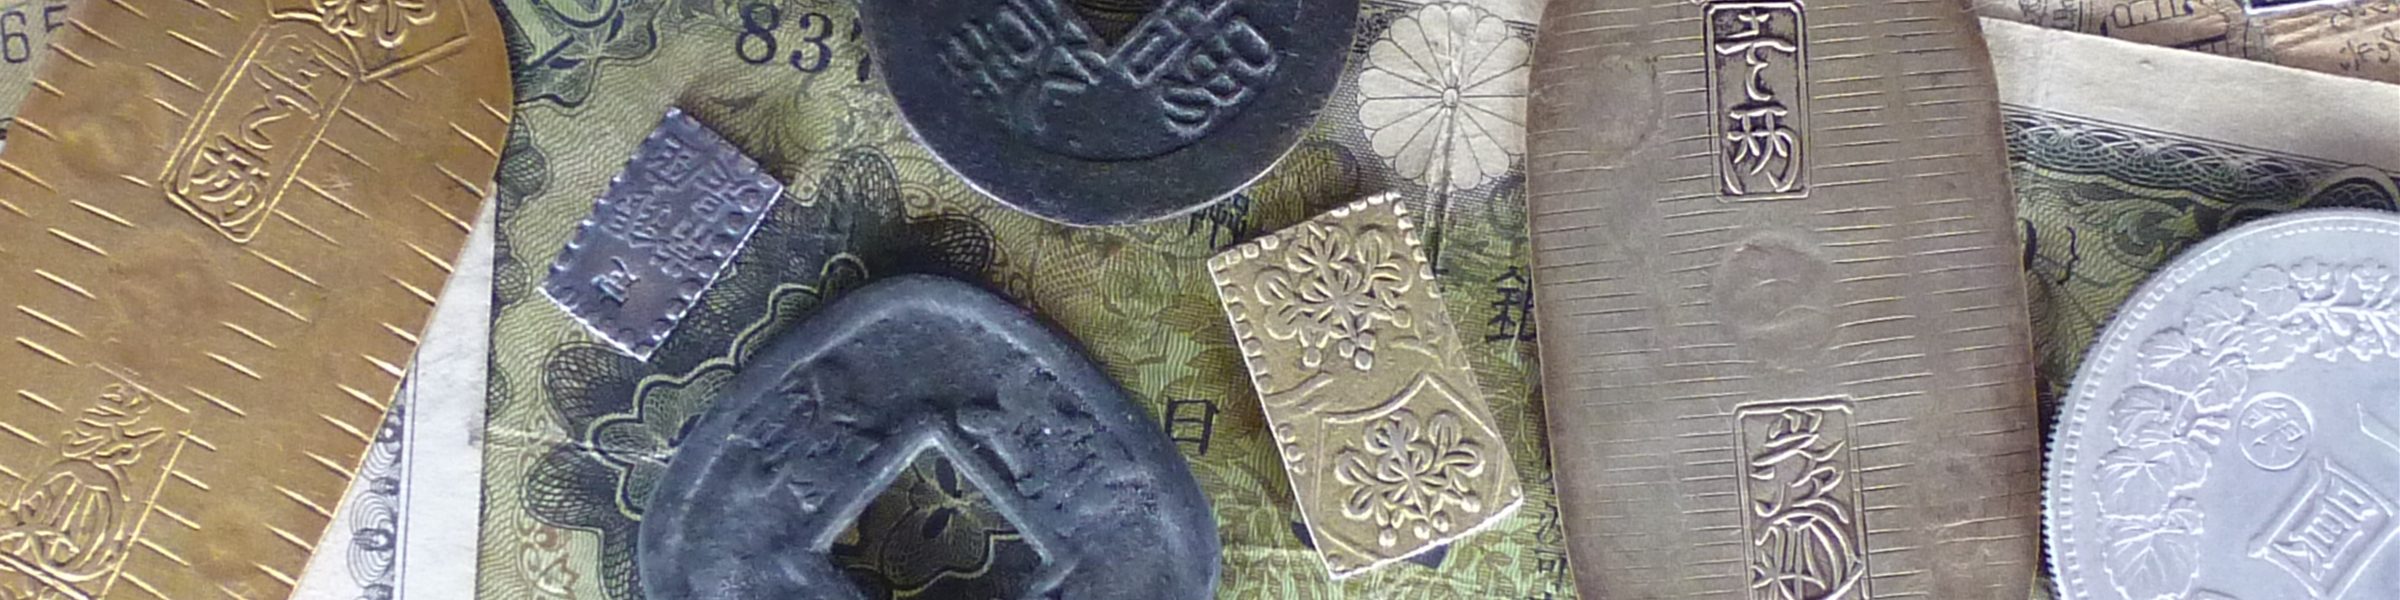 日本の古銭価格一覧と種類・見分け方が分かる日本古銭専門サイト